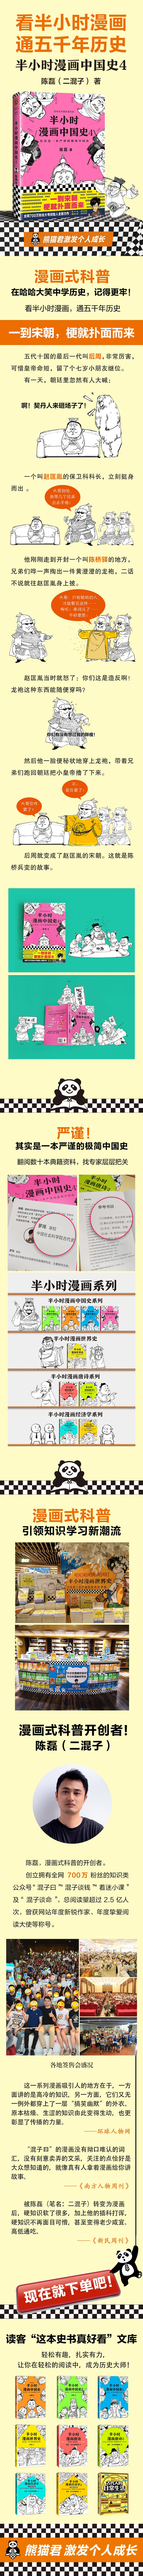 半小时漫画中国史4 - 文轩书苑